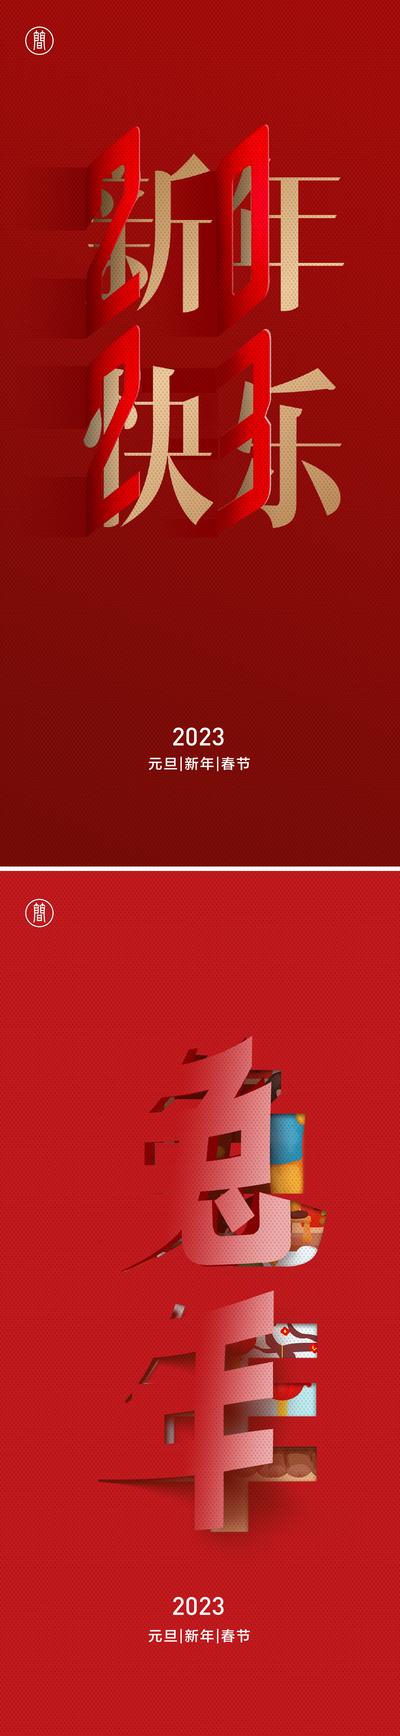 南门网 海报 中国传统节日 元旦 春节 除夕 新年 2023 兔年